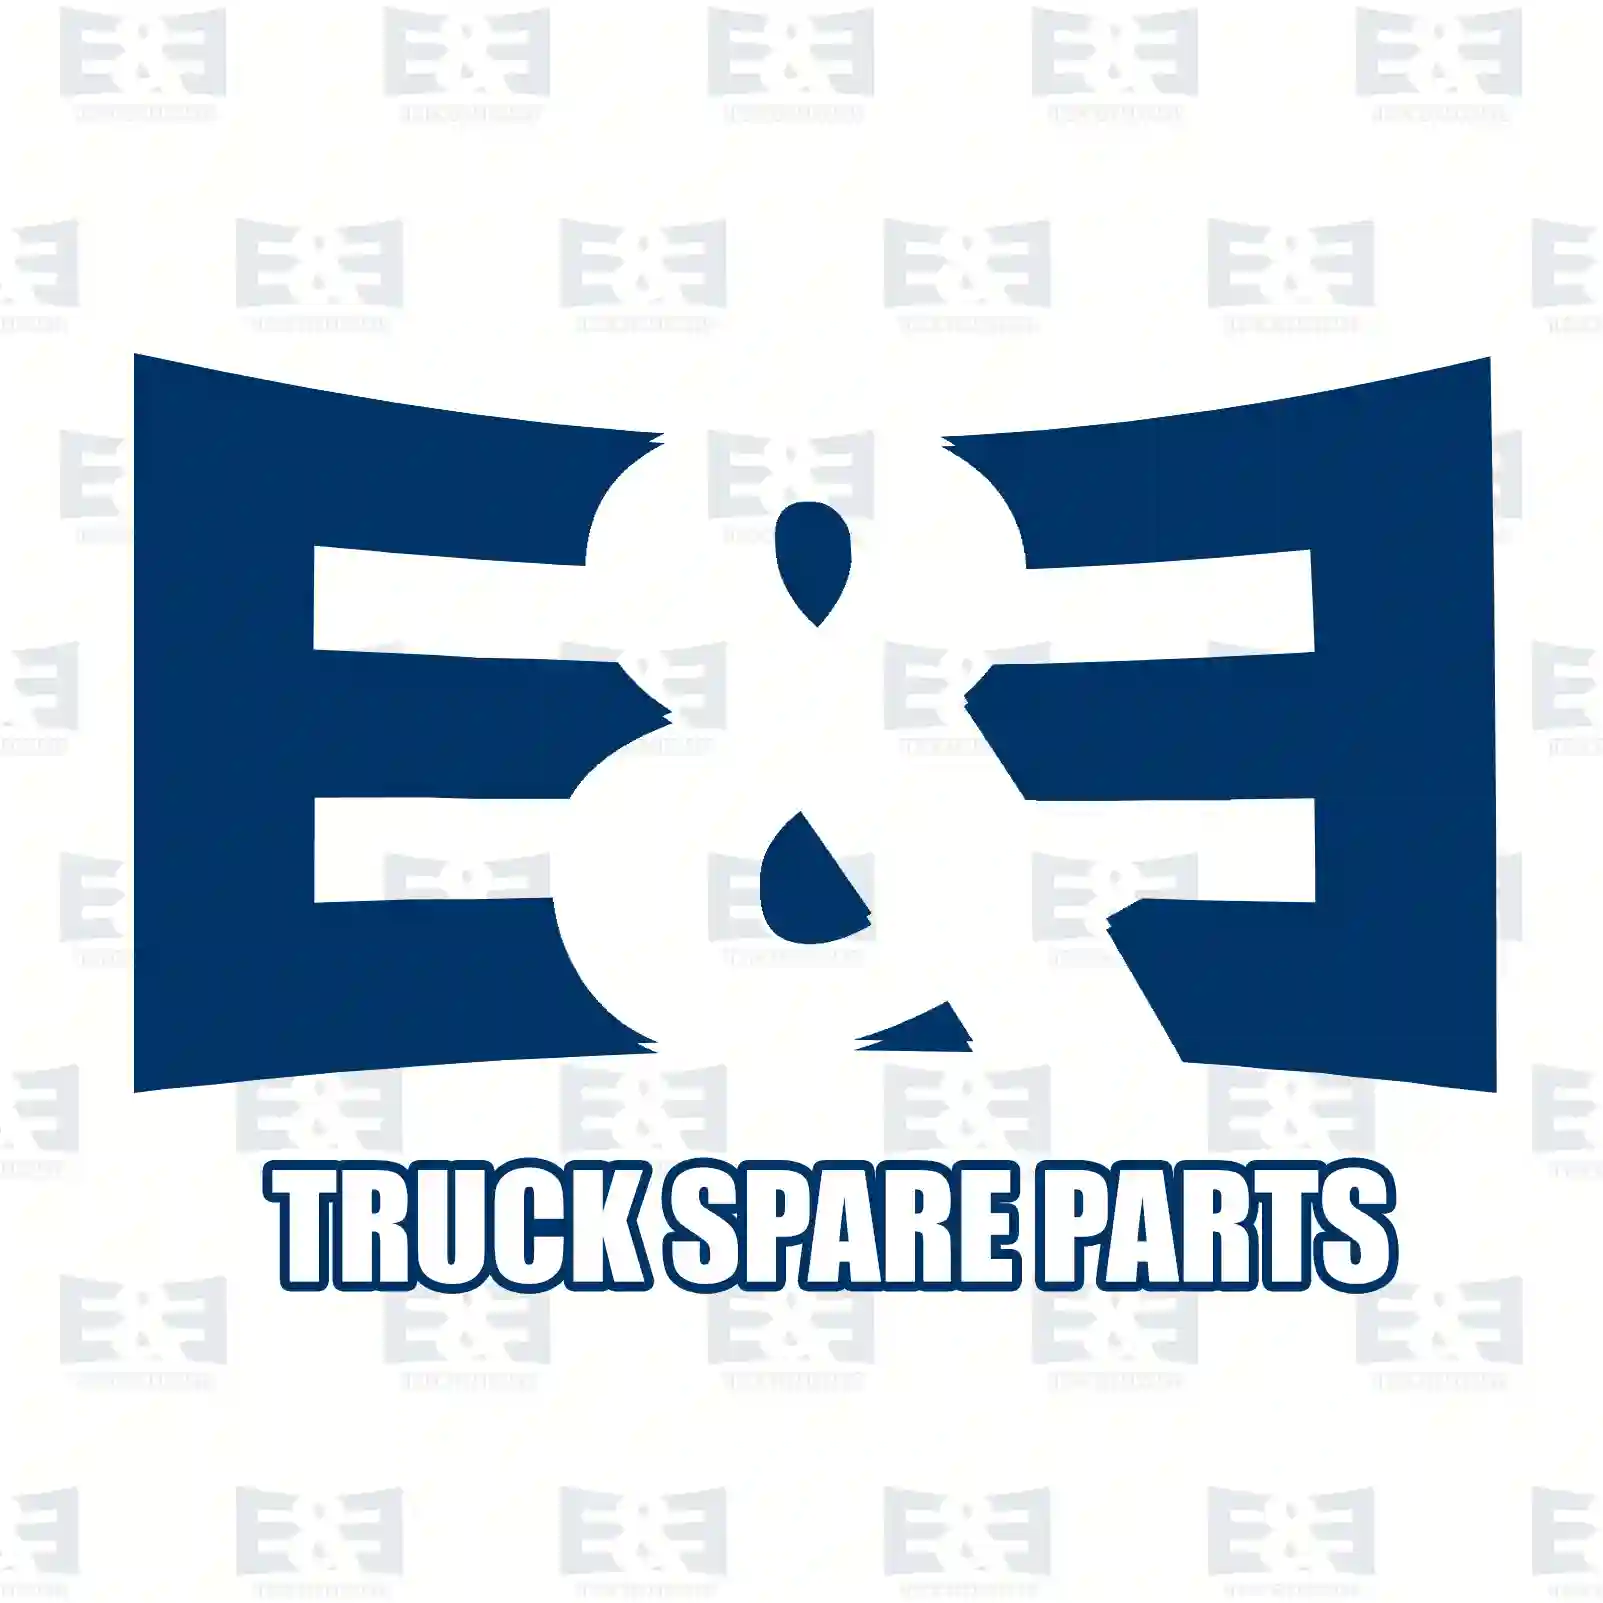 Compressor, air conditioning, oil filled, 2E2276130, 0002300511, 0002300611, 000230061180, 0002303611, 0002303711, 0002340028, 0002340111, 0002340211, 0002346403, 1161300515, 1161310201, 1191300015 ||  2E2276130 E&E Truck Spare Parts | Truck Spare Parts, Auotomotive Spare Parts Compressor, air conditioning, oil filled, 2E2276130, 0002300511, 0002300611, 000230061180, 0002303611, 0002303711, 0002340028, 0002340111, 0002340211, 0002346403, 1161300515, 1161310201, 1191300015 ||  2E2276130 E&E Truck Spare Parts | Truck Spare Parts, Auotomotive Spare Parts